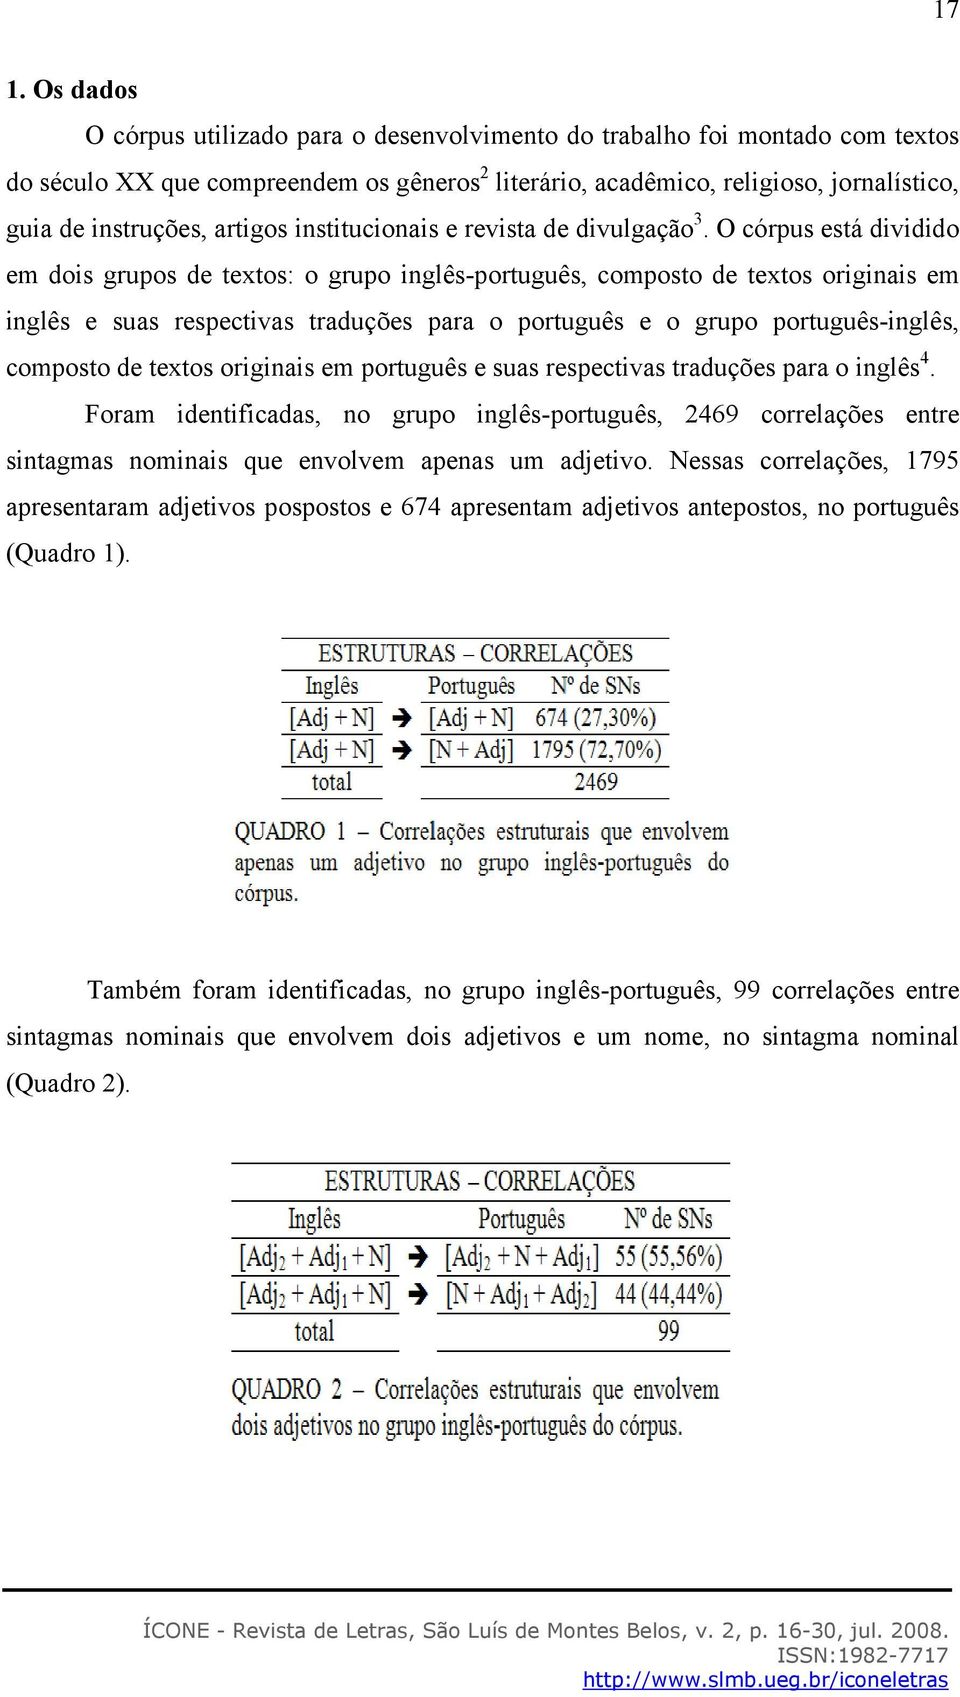 O córpus está dividido em dois grupos de textos: o grupo inglês-português, composto de textos originais em inglês e suas respectivas traduções para o português e o grupo português-inglês, composto de